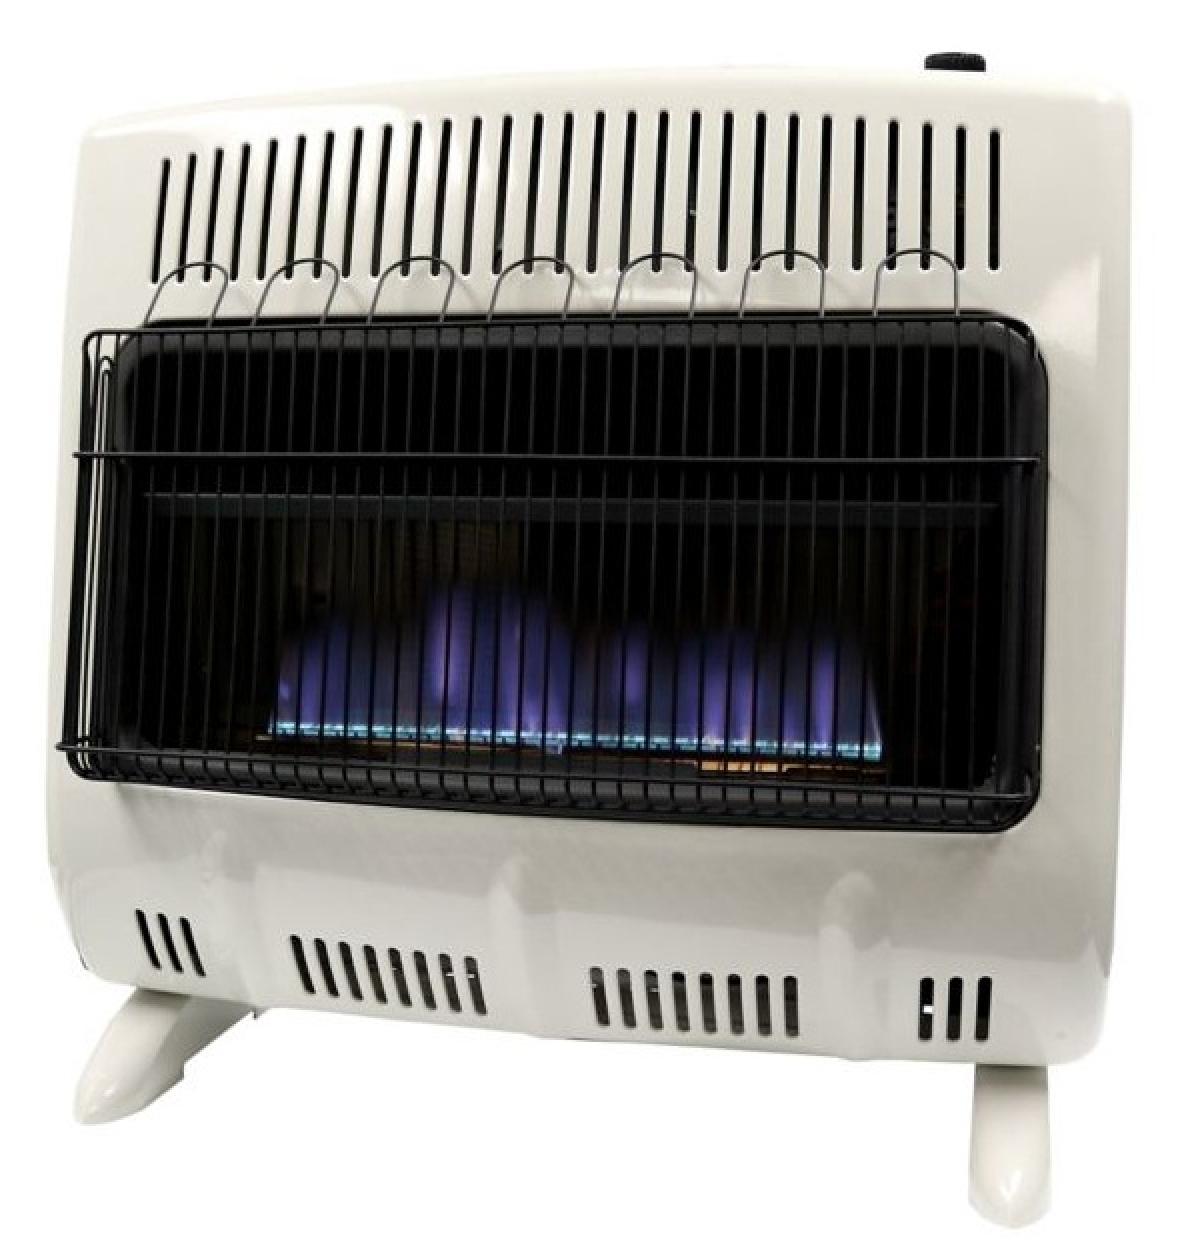 Mr. Heater Blue Flame Propane Heater-30,000 BTU